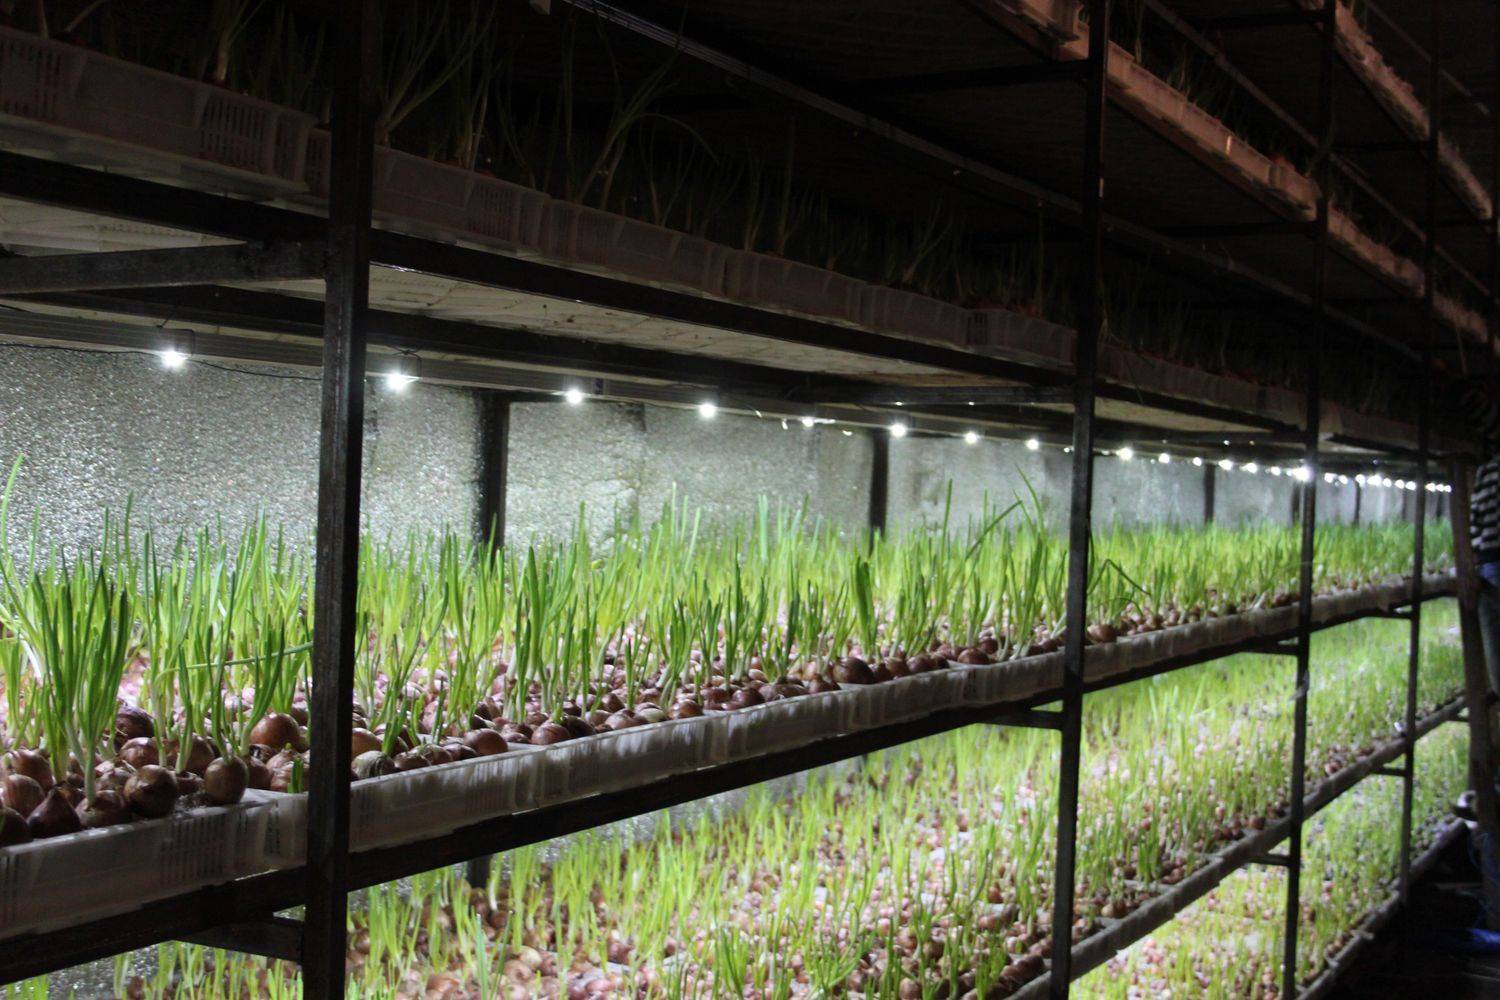 Выращивание зелени как бизнес — идеи, технологии, расходы и прибыль